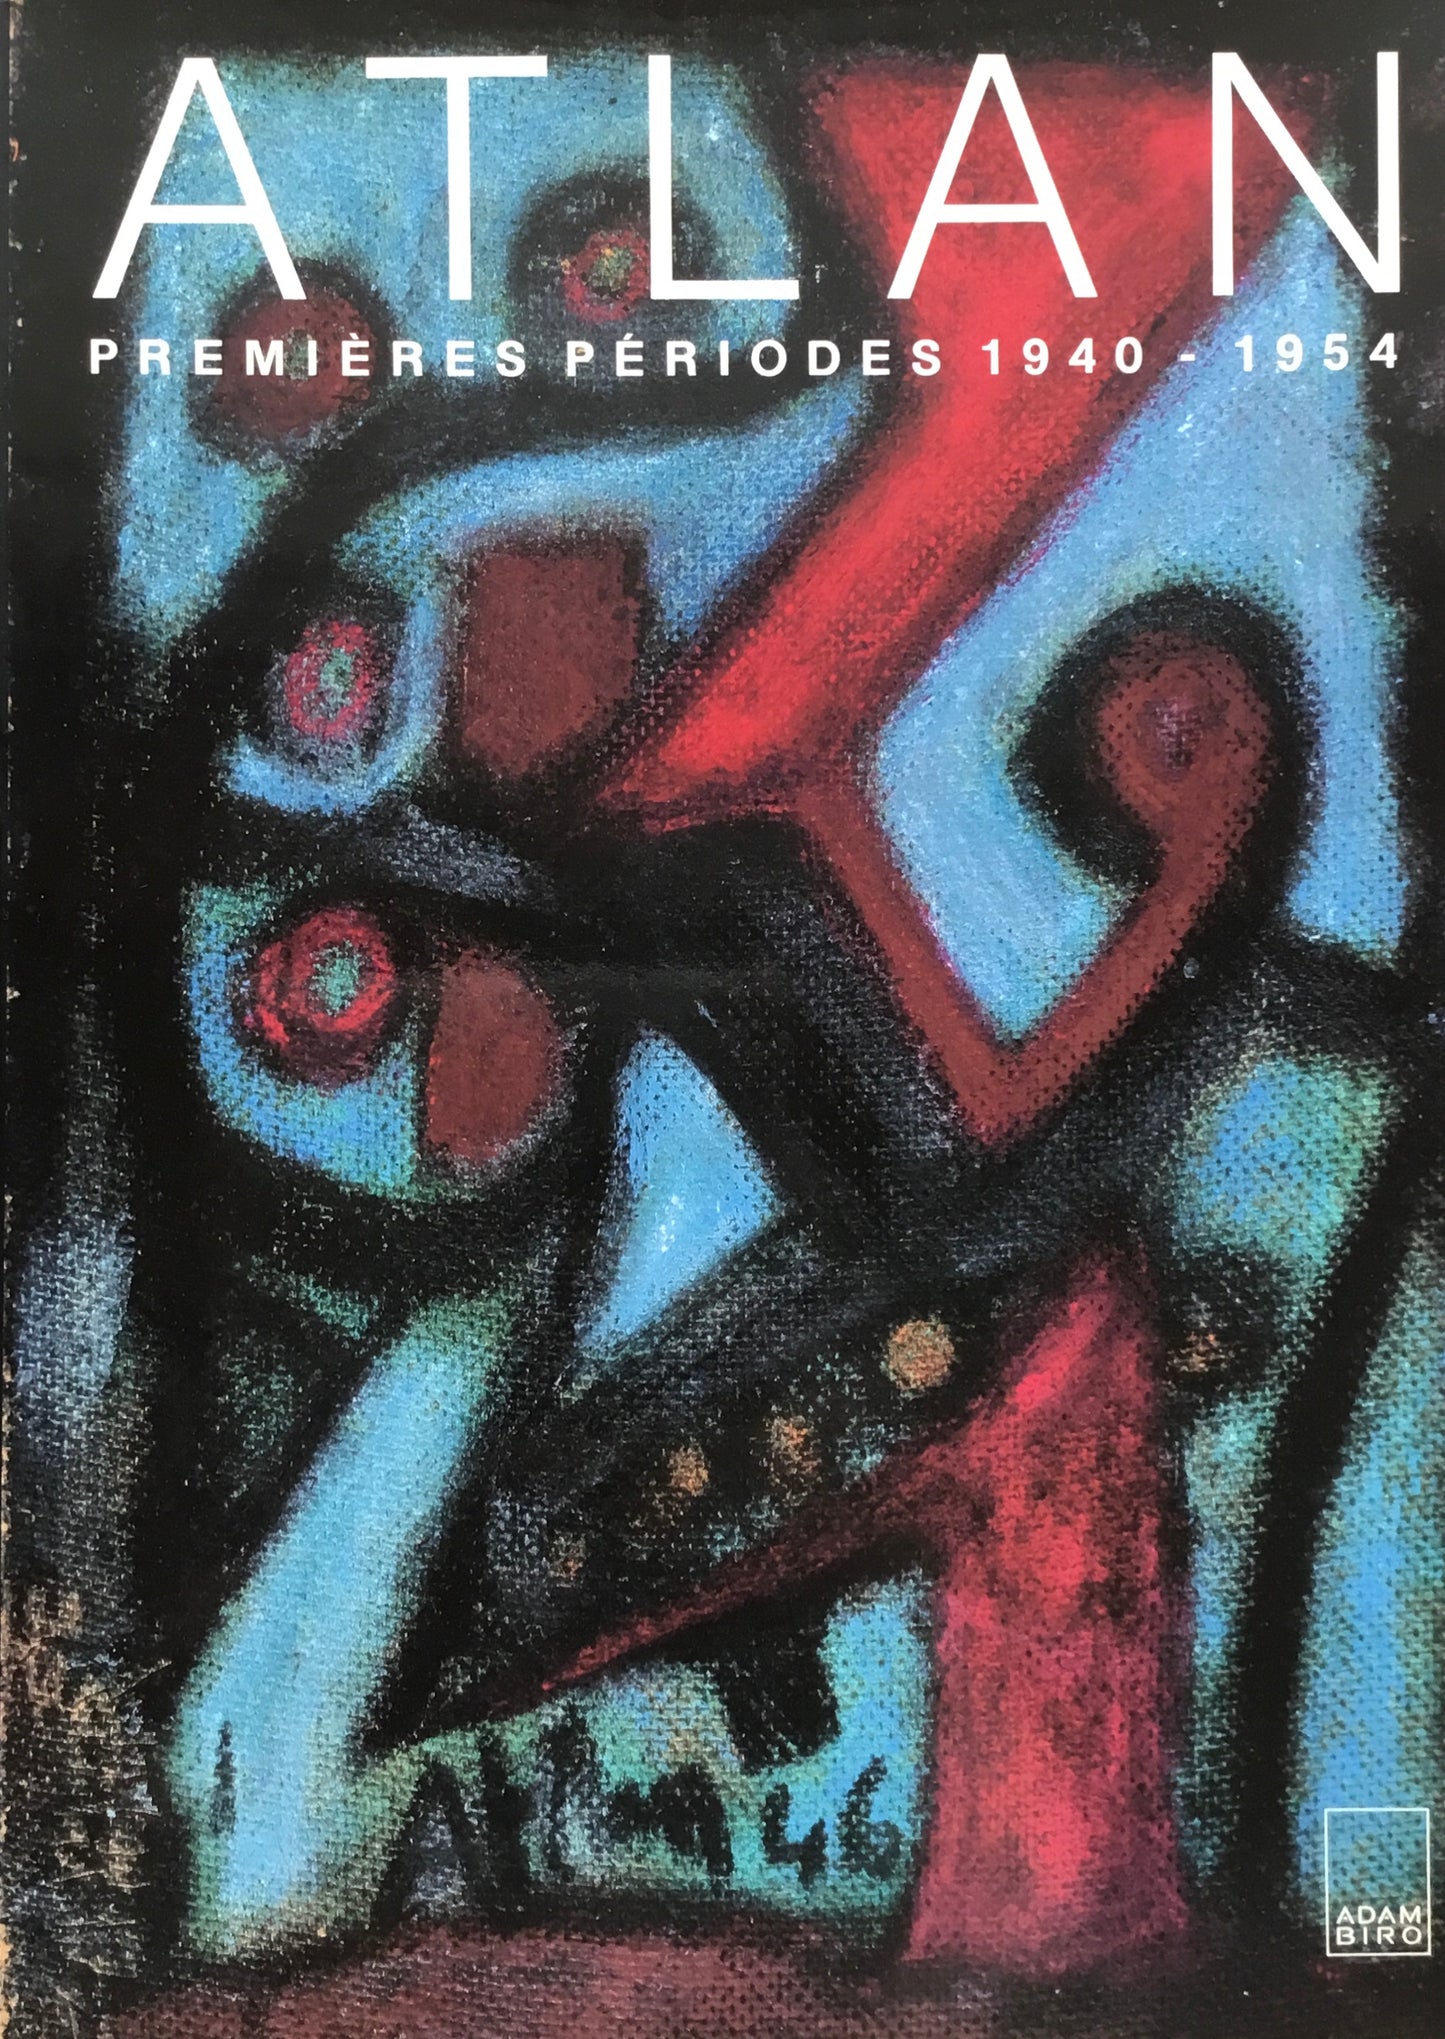 ATLAN PREMIERES PERIODES 1940-1954 Jean-Michel Atlan